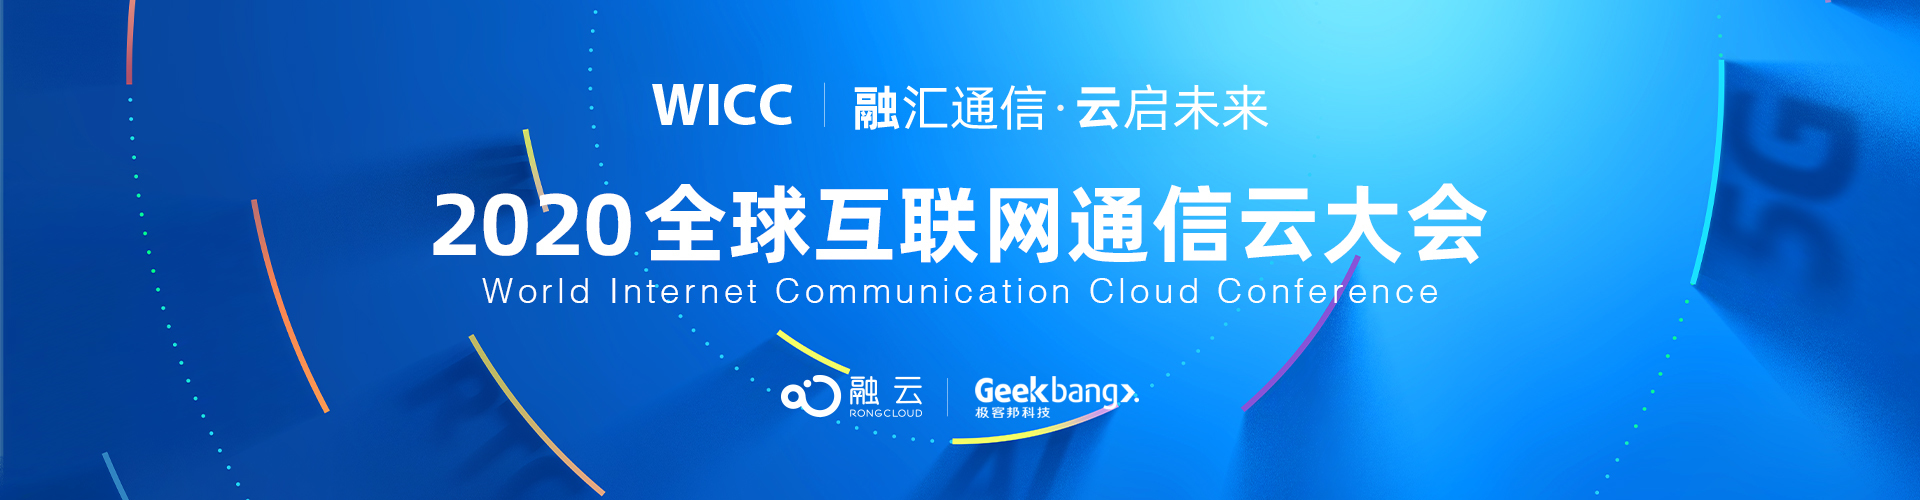 2020 WICC全球互联网通信云大会